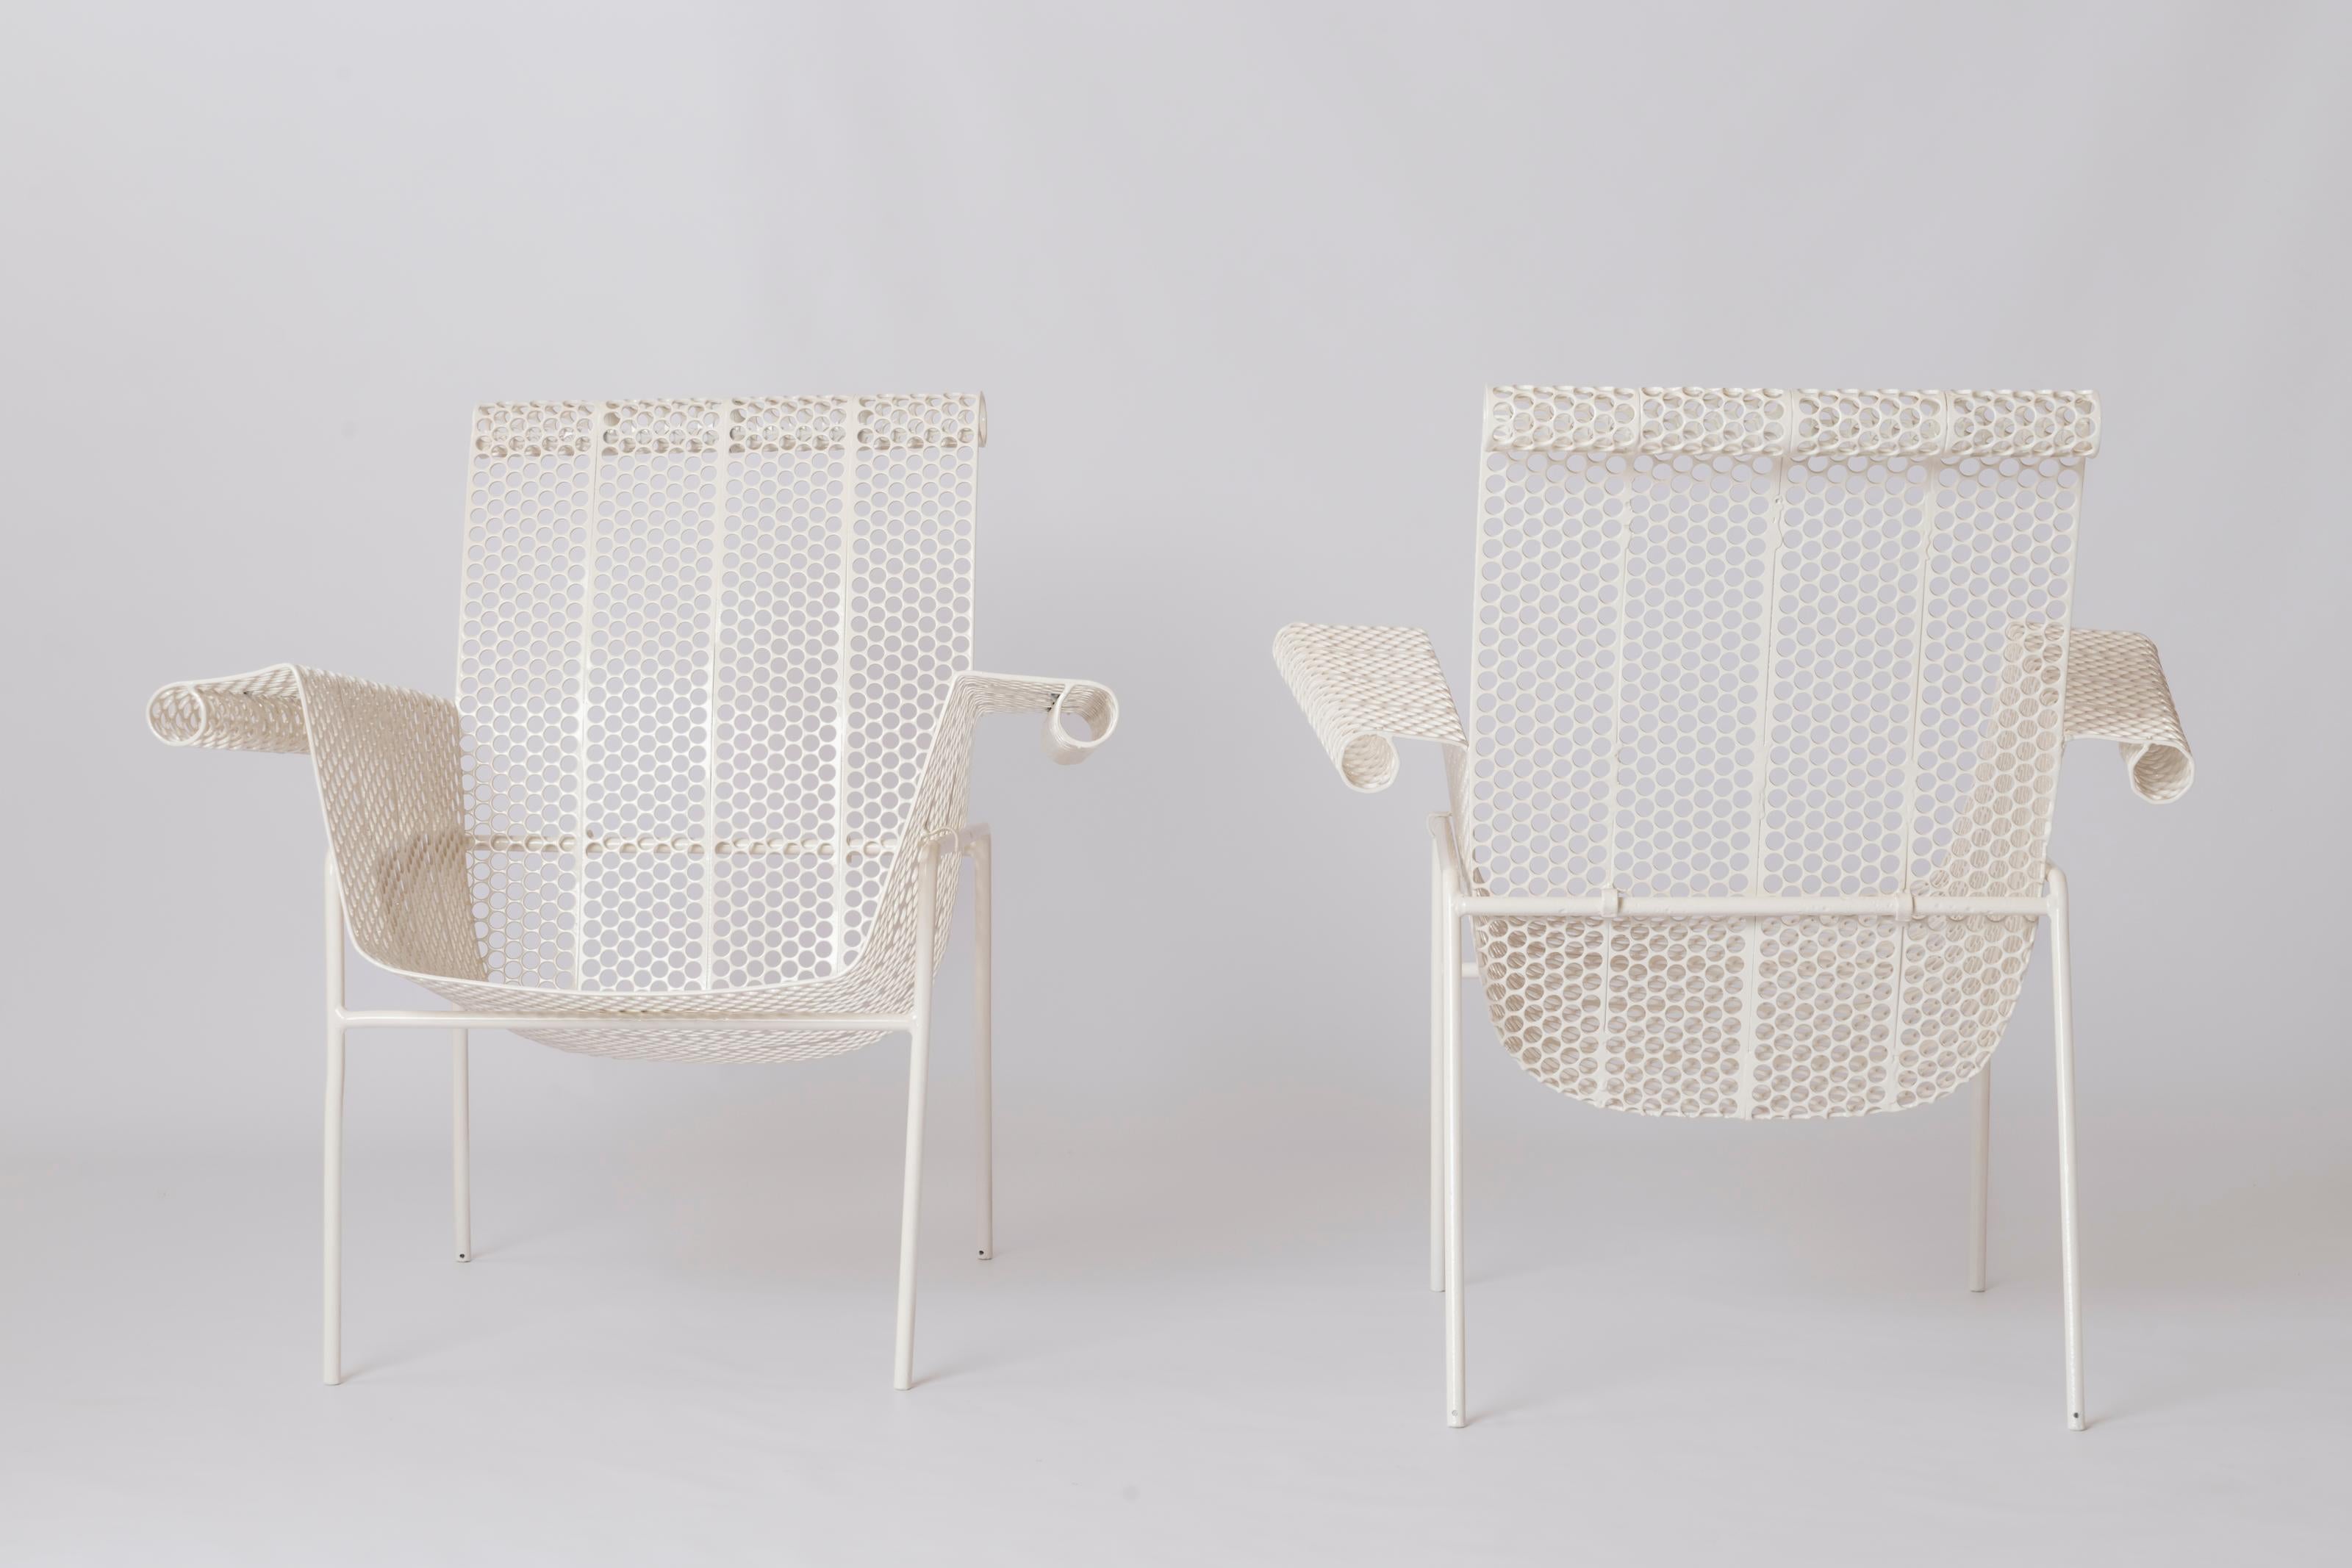 Très rare paire de fauteuils René Malaval pour le Casino de Biarritz. France années 1950. 
Ces chaises sont constituées d'une base en acier soudé sur laquelle repose la structure en rigitulle perforée. Cette structure est composée d'un dossier et